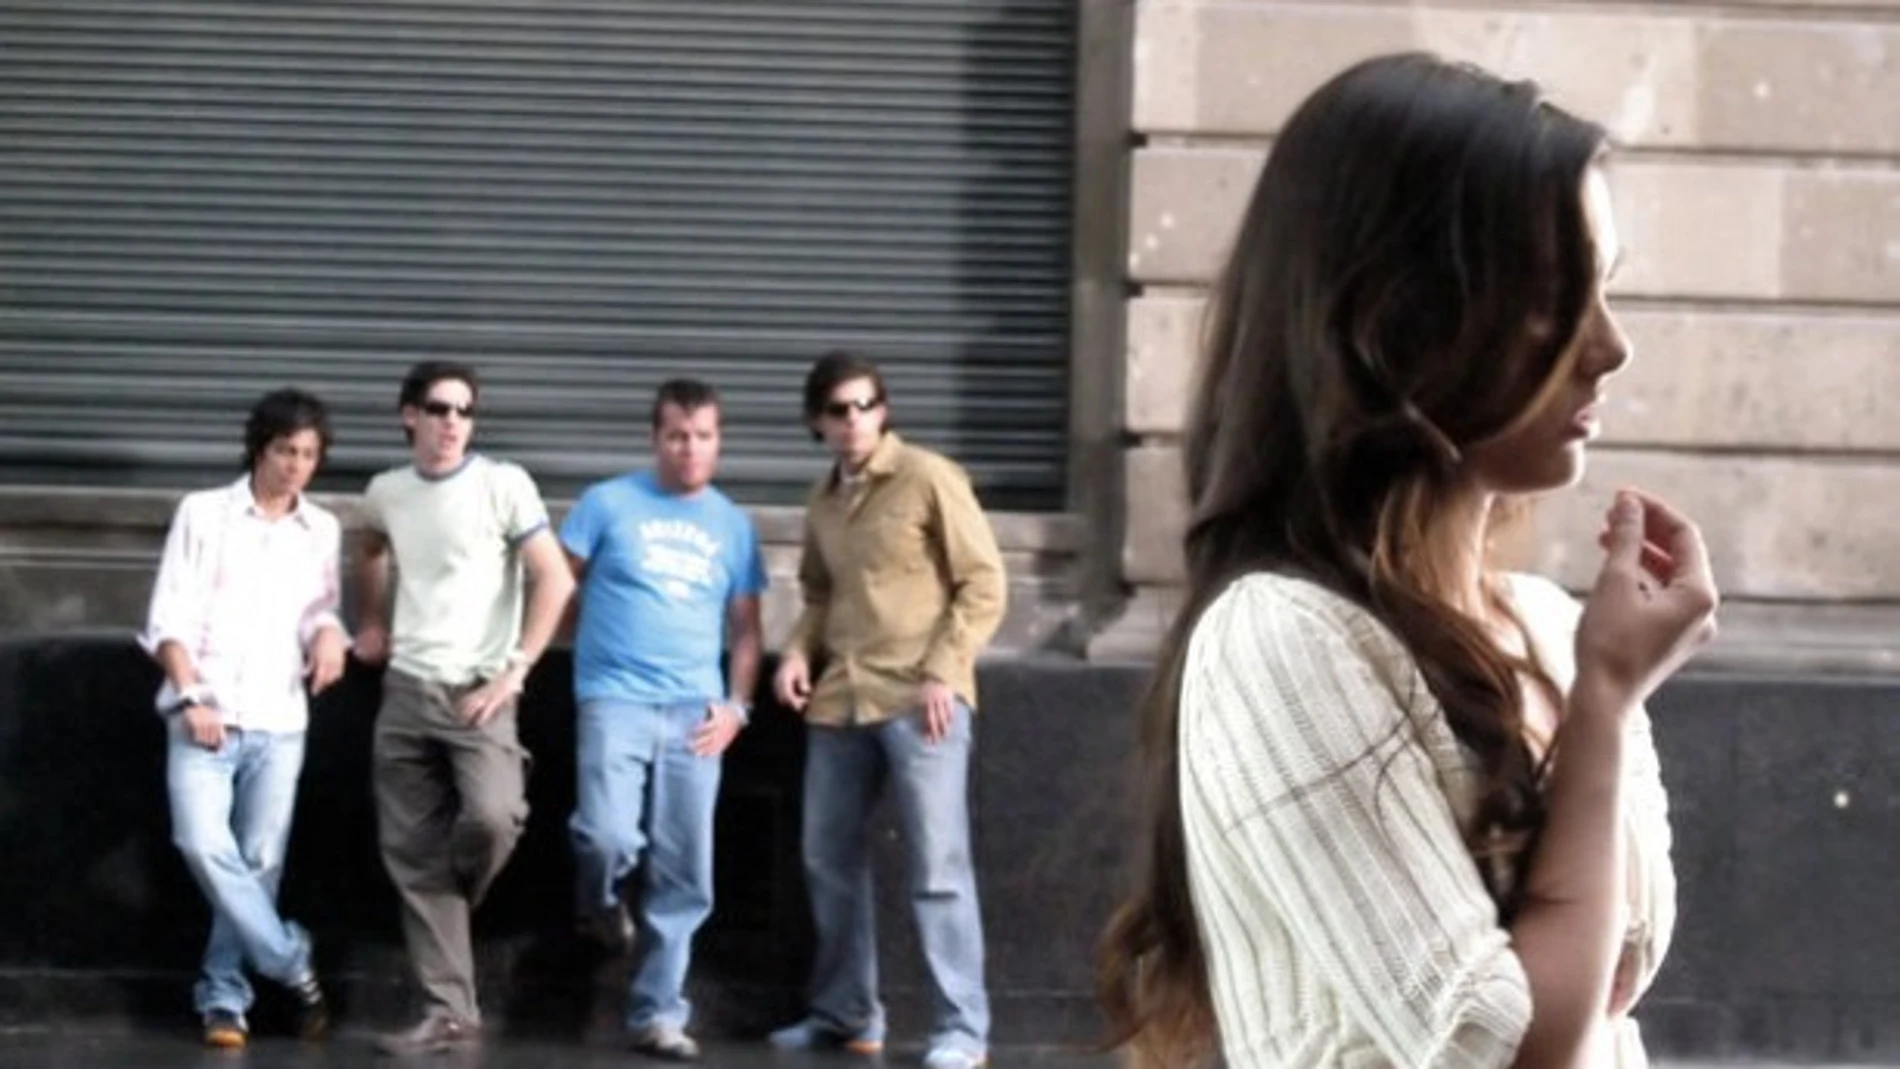 Un grupo de hombres observa a una mujer en la vía pública.